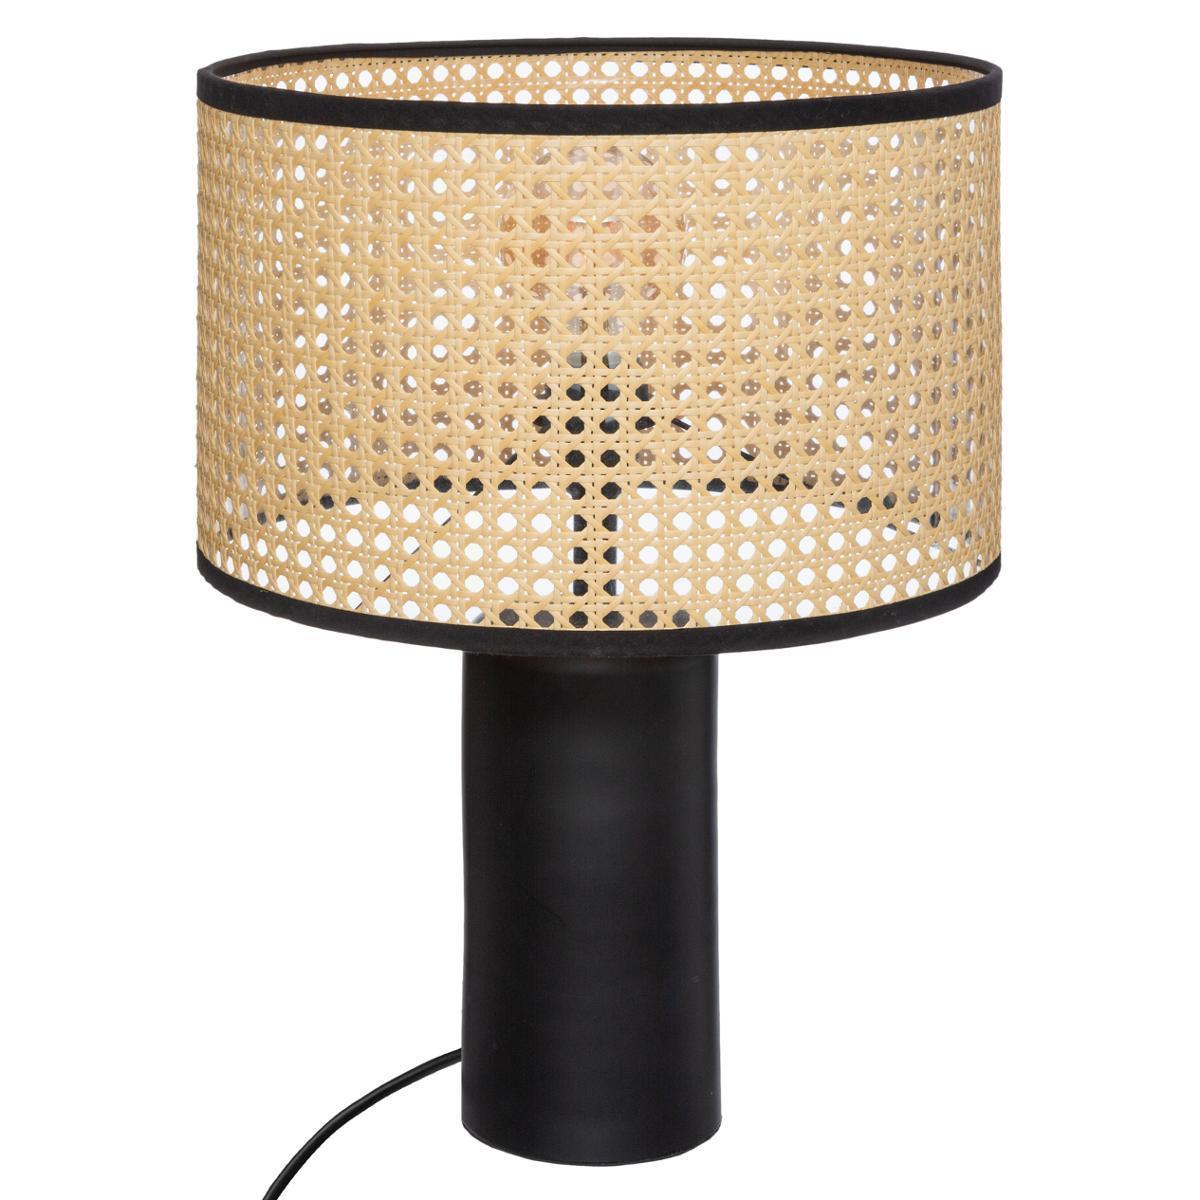 Lampe Cannage Arty - ø 32.7 x H 47 cm - Noir et beige - ATMOSPHERA